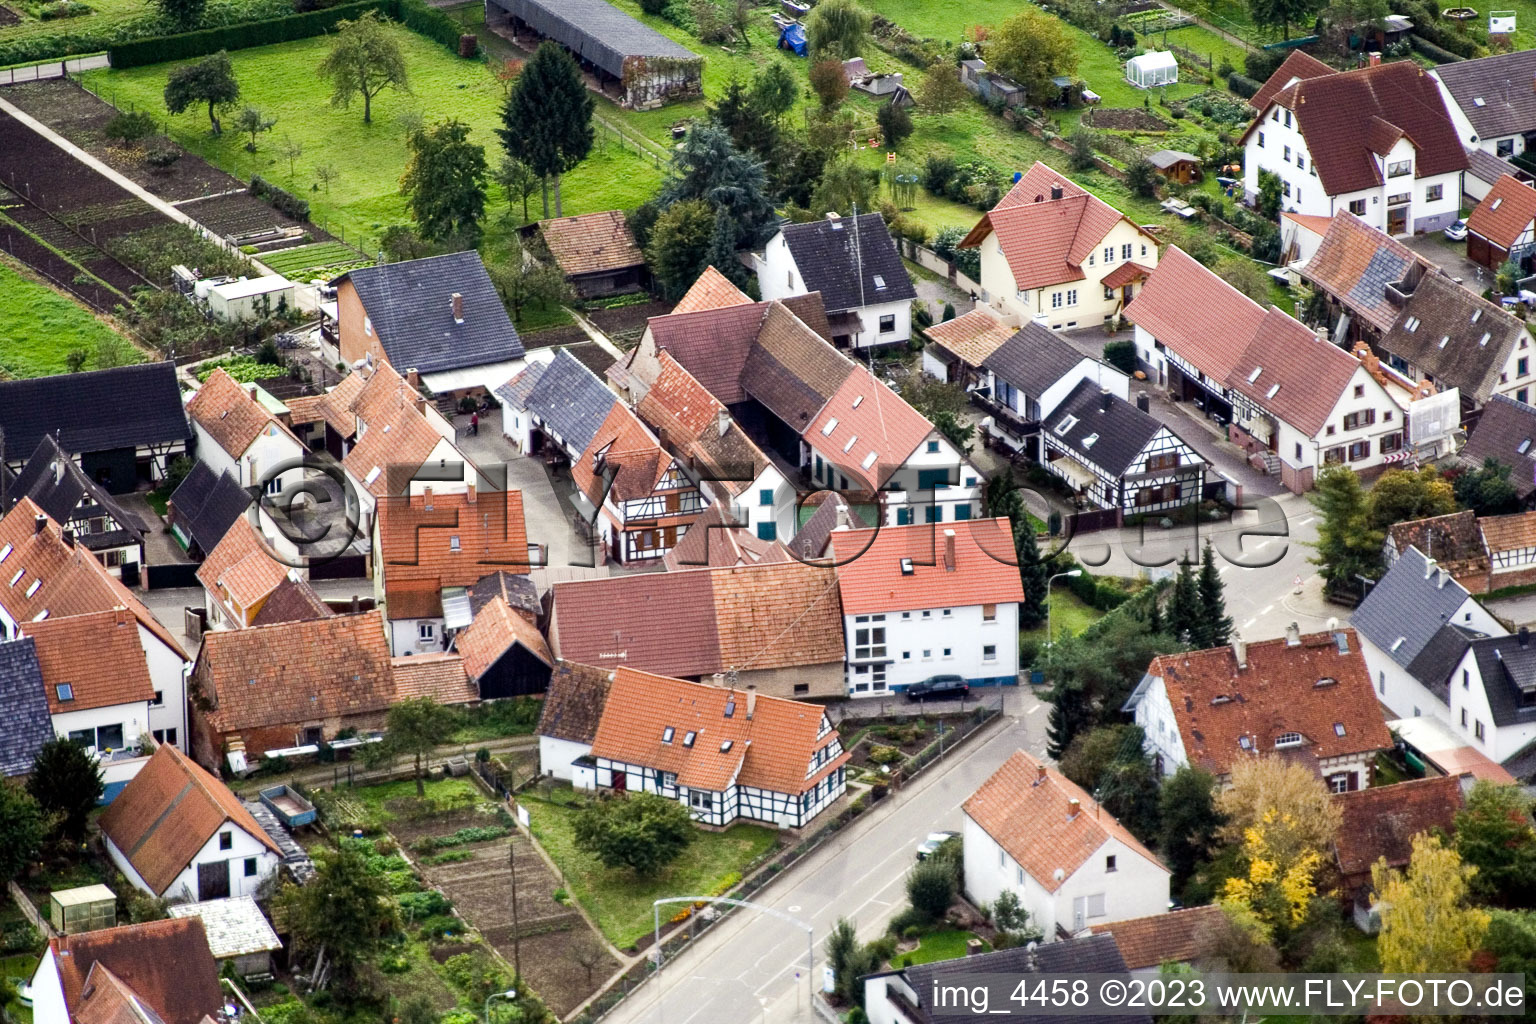 Gänsried à Freckenfeld dans le département Rhénanie-Palatinat, Allemagne du point de vue du drone